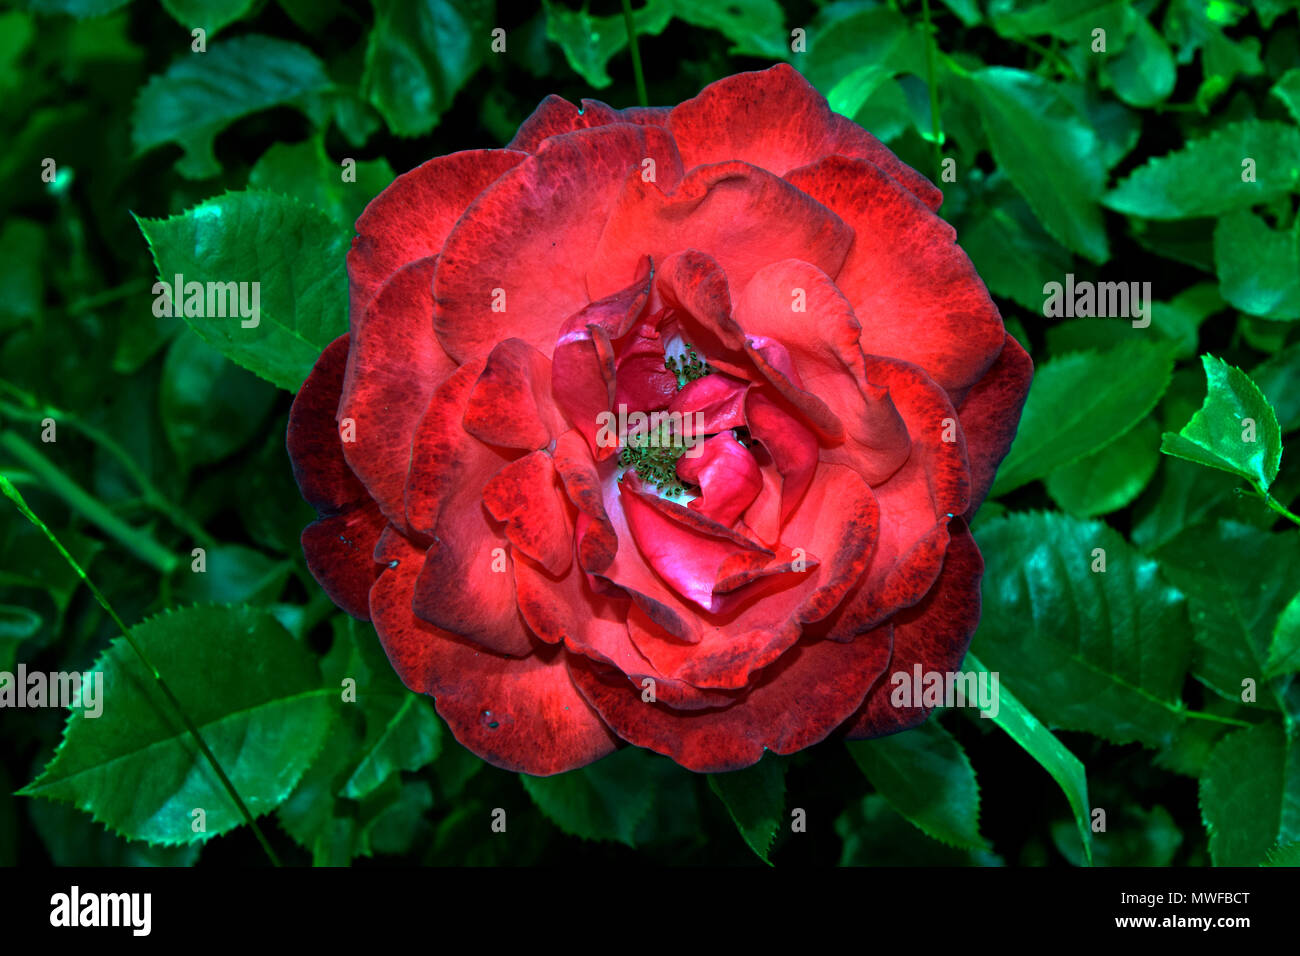 Spotted red rose, completamente fiorì su sfondo verde...imperfezione può essere bella Foto Stock